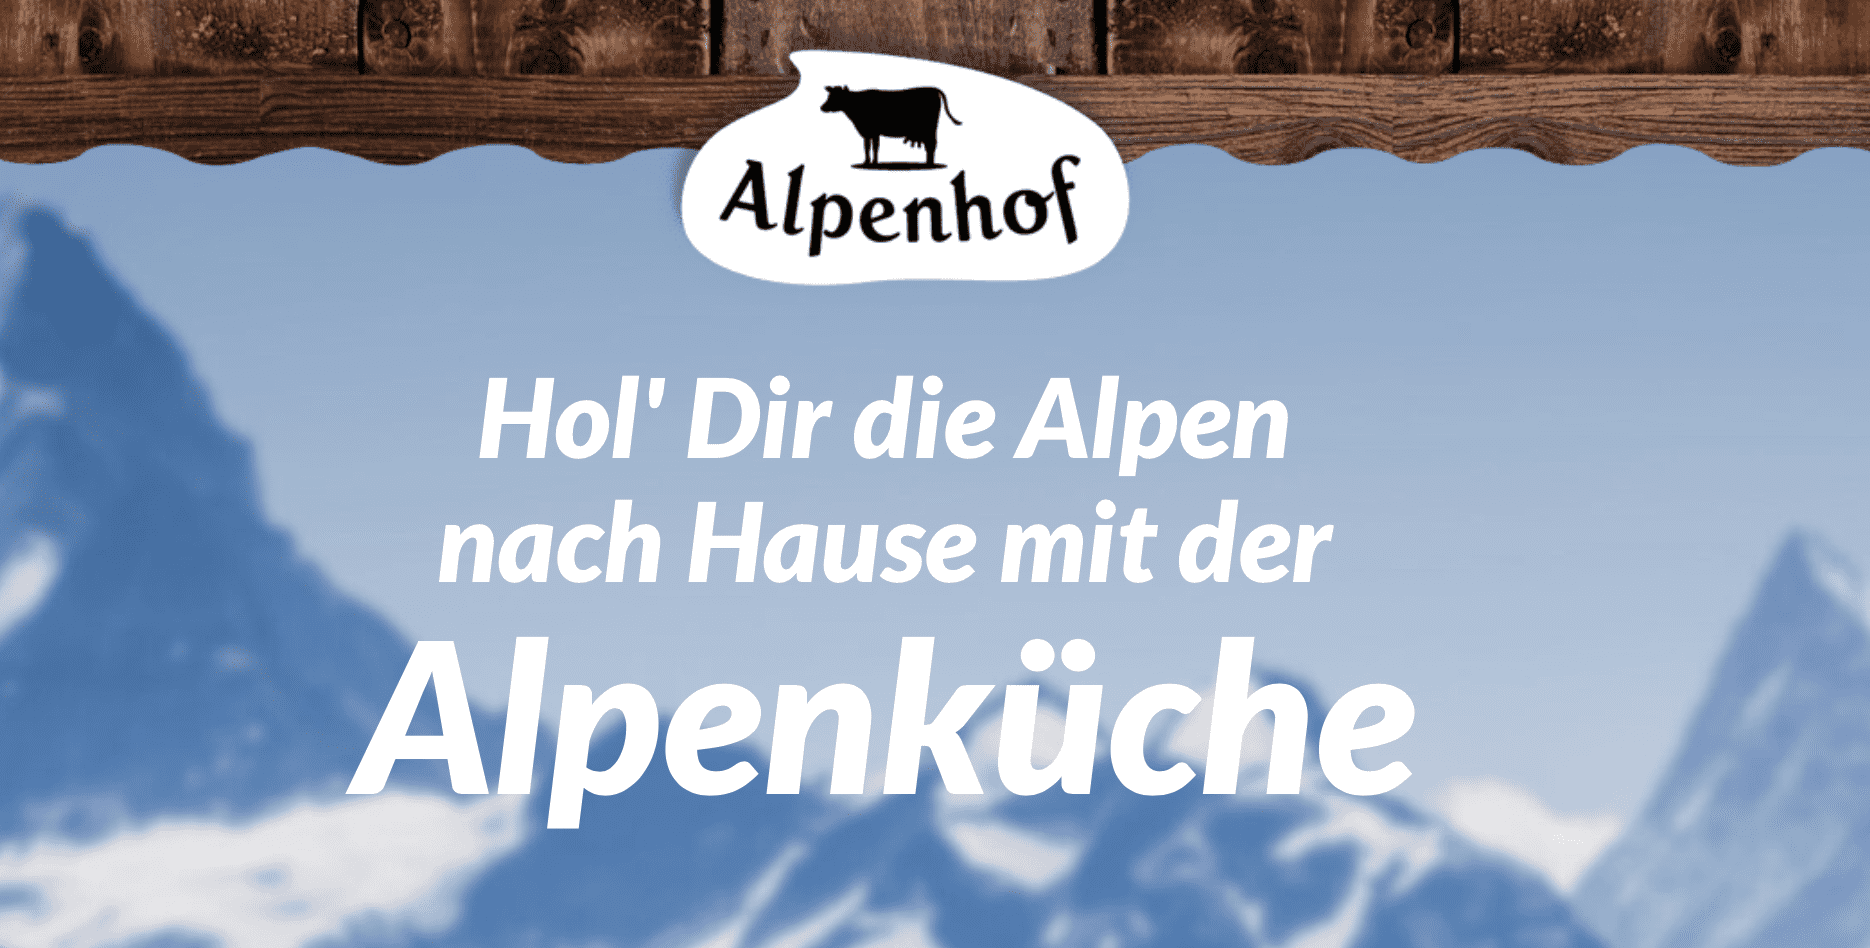 case_Alpenküche gewinne 1.000€"